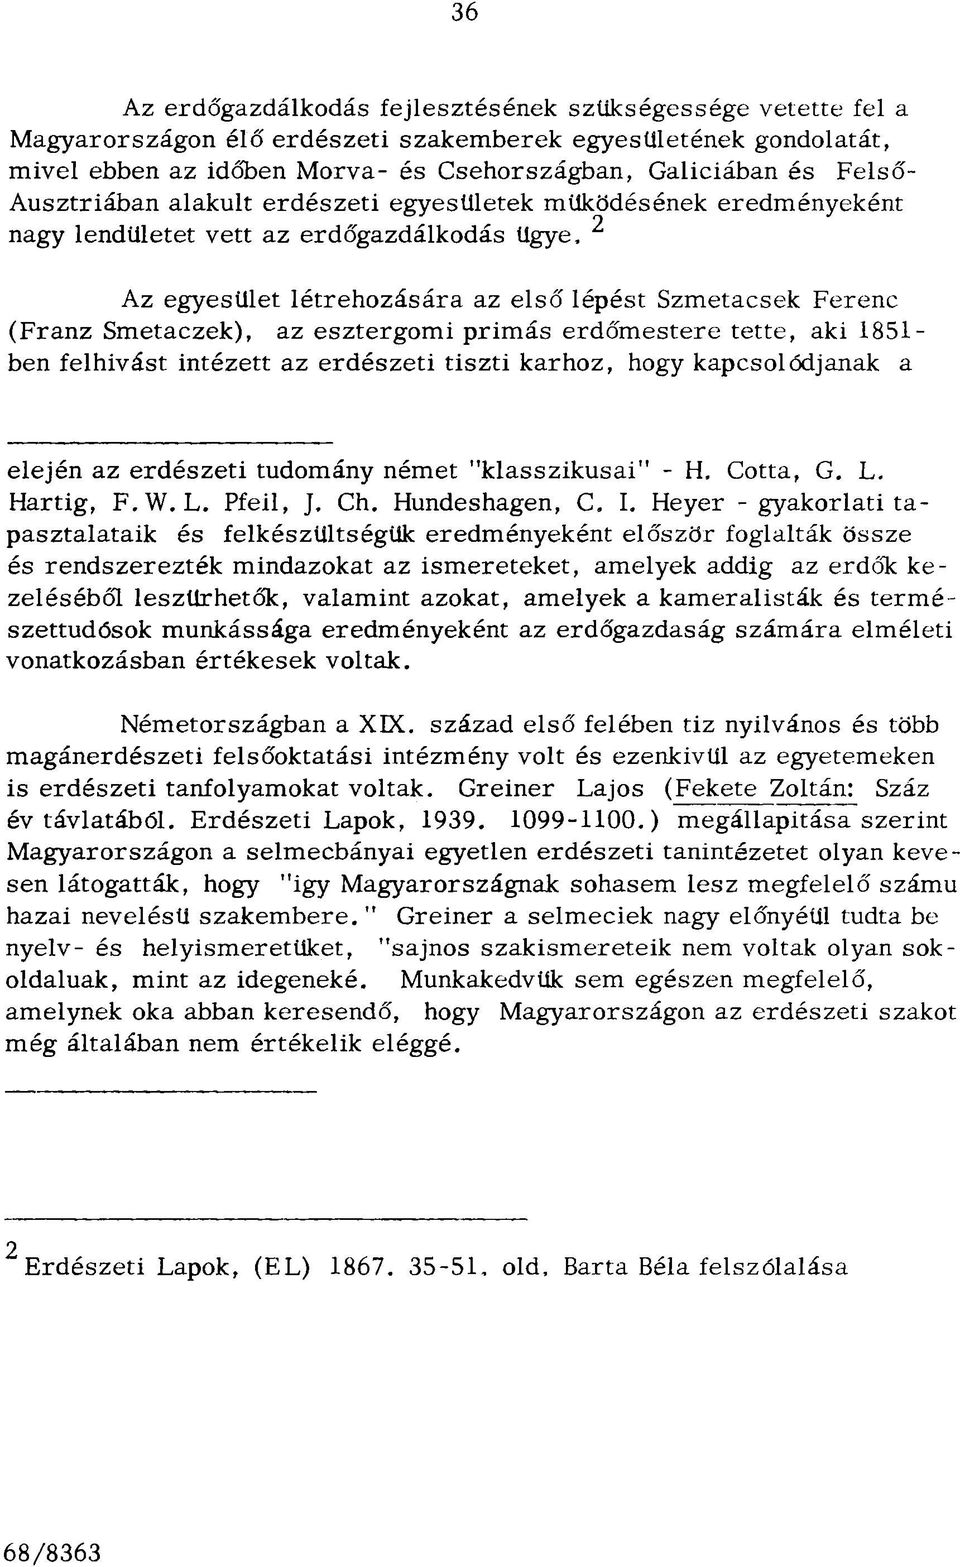 esztergomi primás erdőmestere tette, aki 1851- ben felhívást intézett az erdészeti tiszti karhoz, hogy kapcsolódjanak a elején az erdészeti tudomány német "klasszikusai" - H, Cotta, G, L. Hartig, F.W.